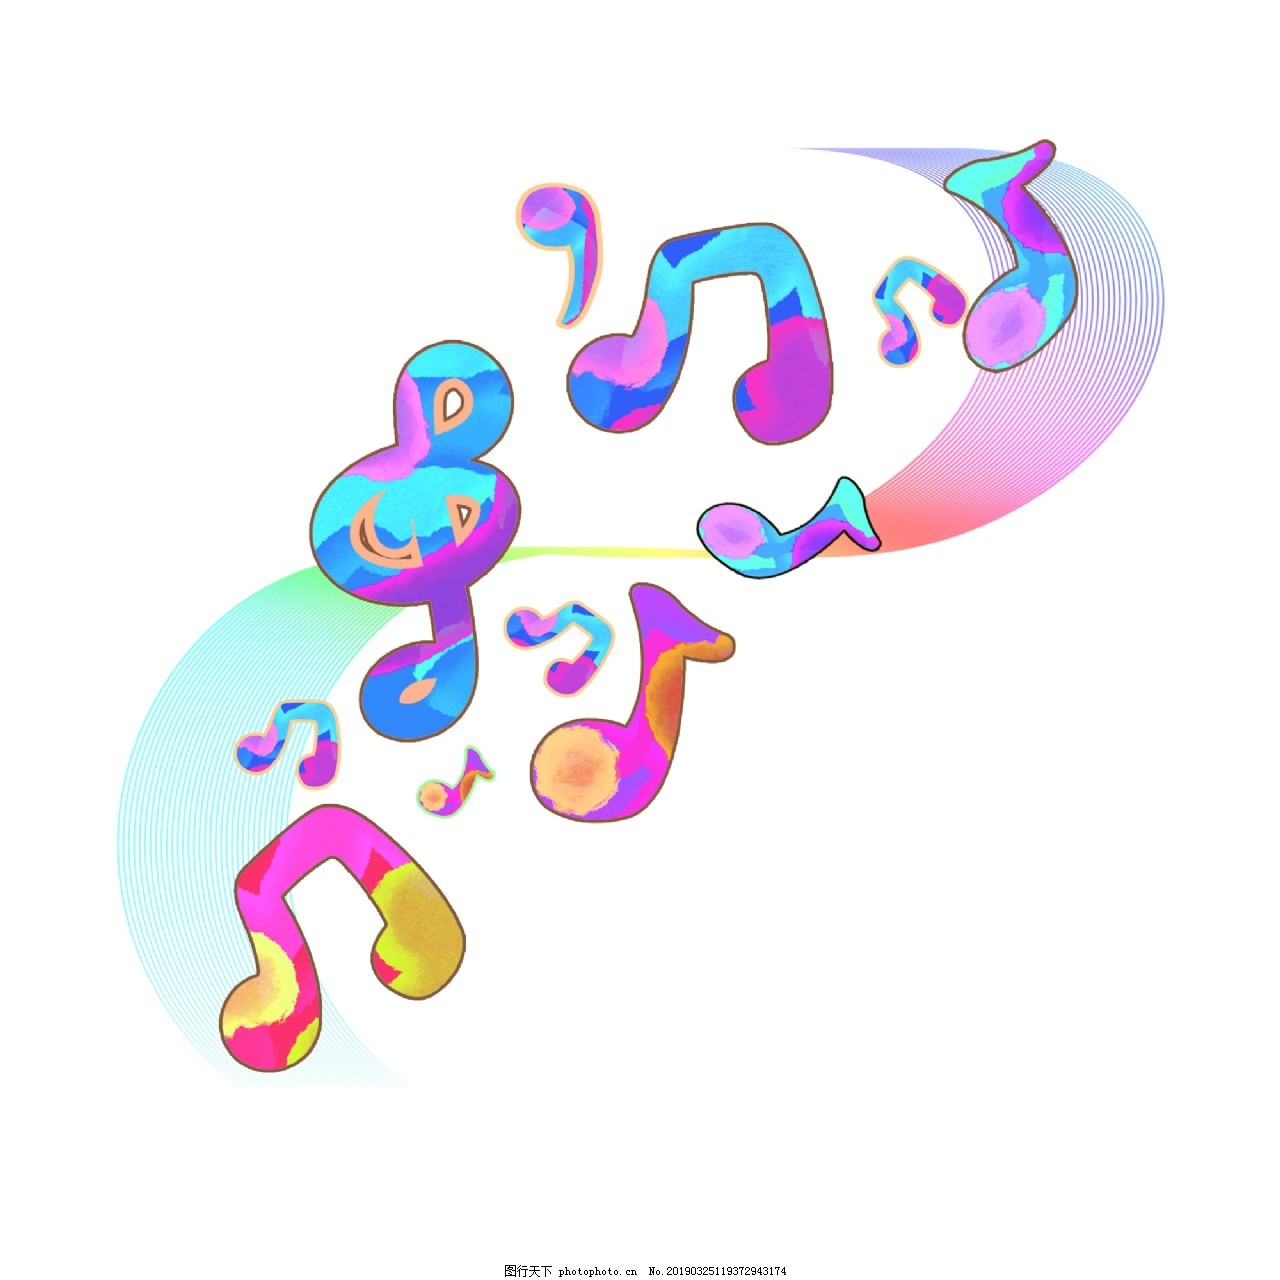 蜡笔画的音乐符号图片素材免费下载 - 觅知网